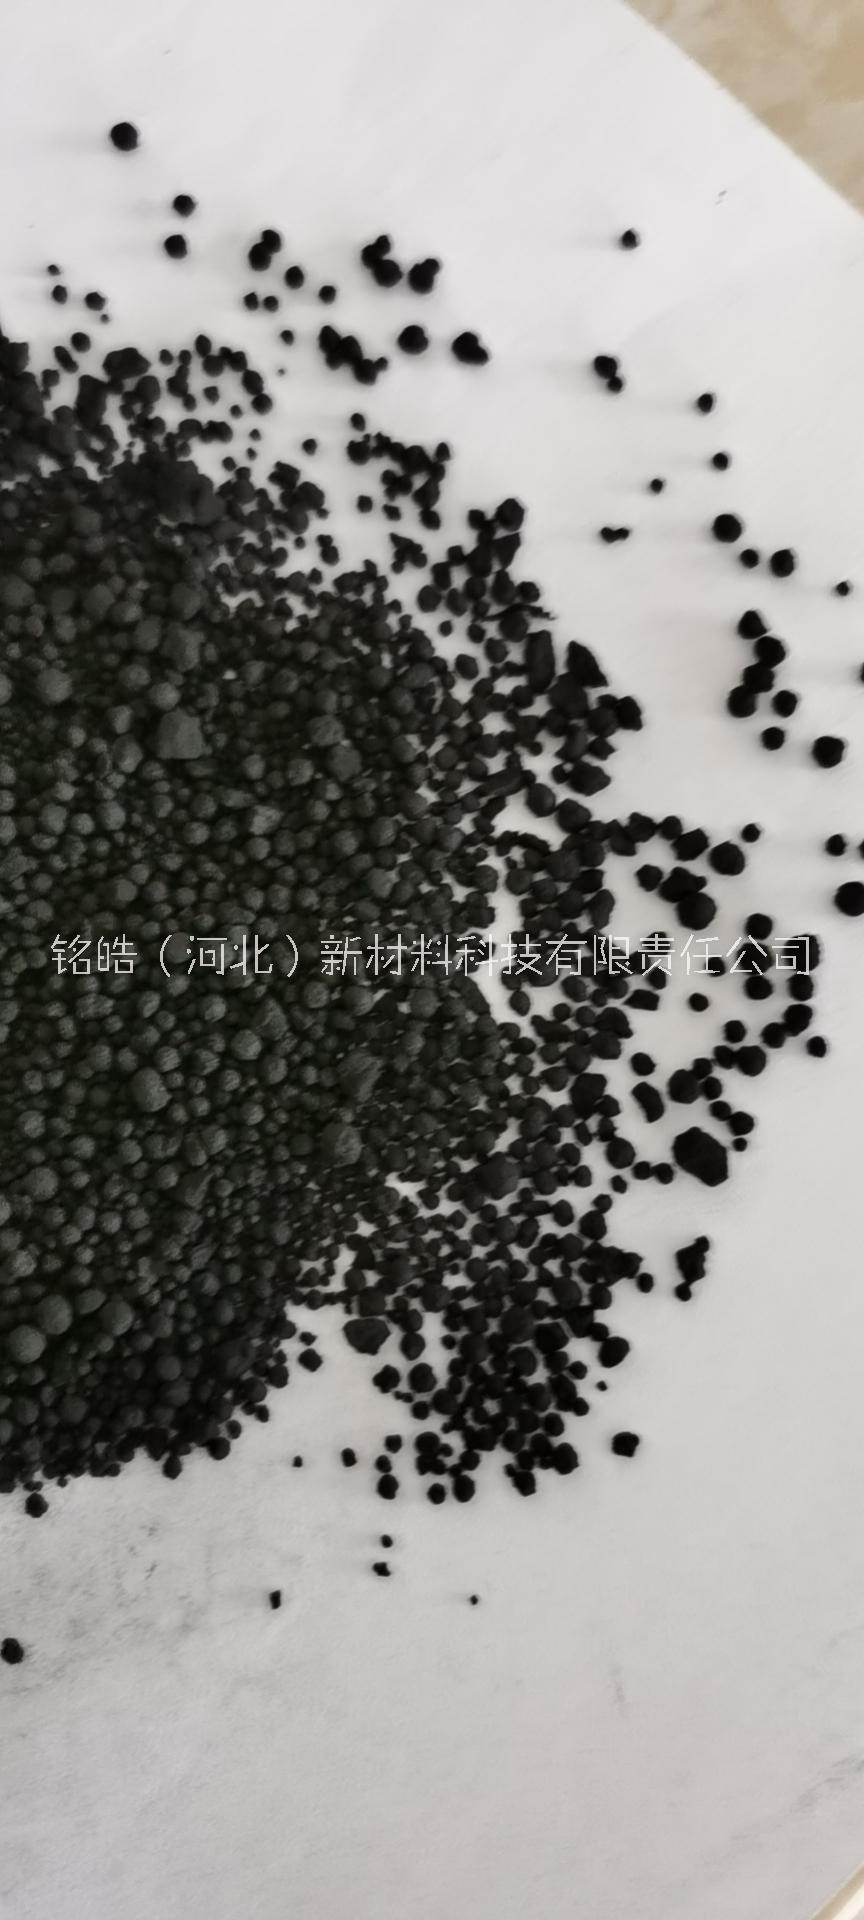 湿法颗粒碳黑N330价格2600元/吨,河北定州碳黑价格